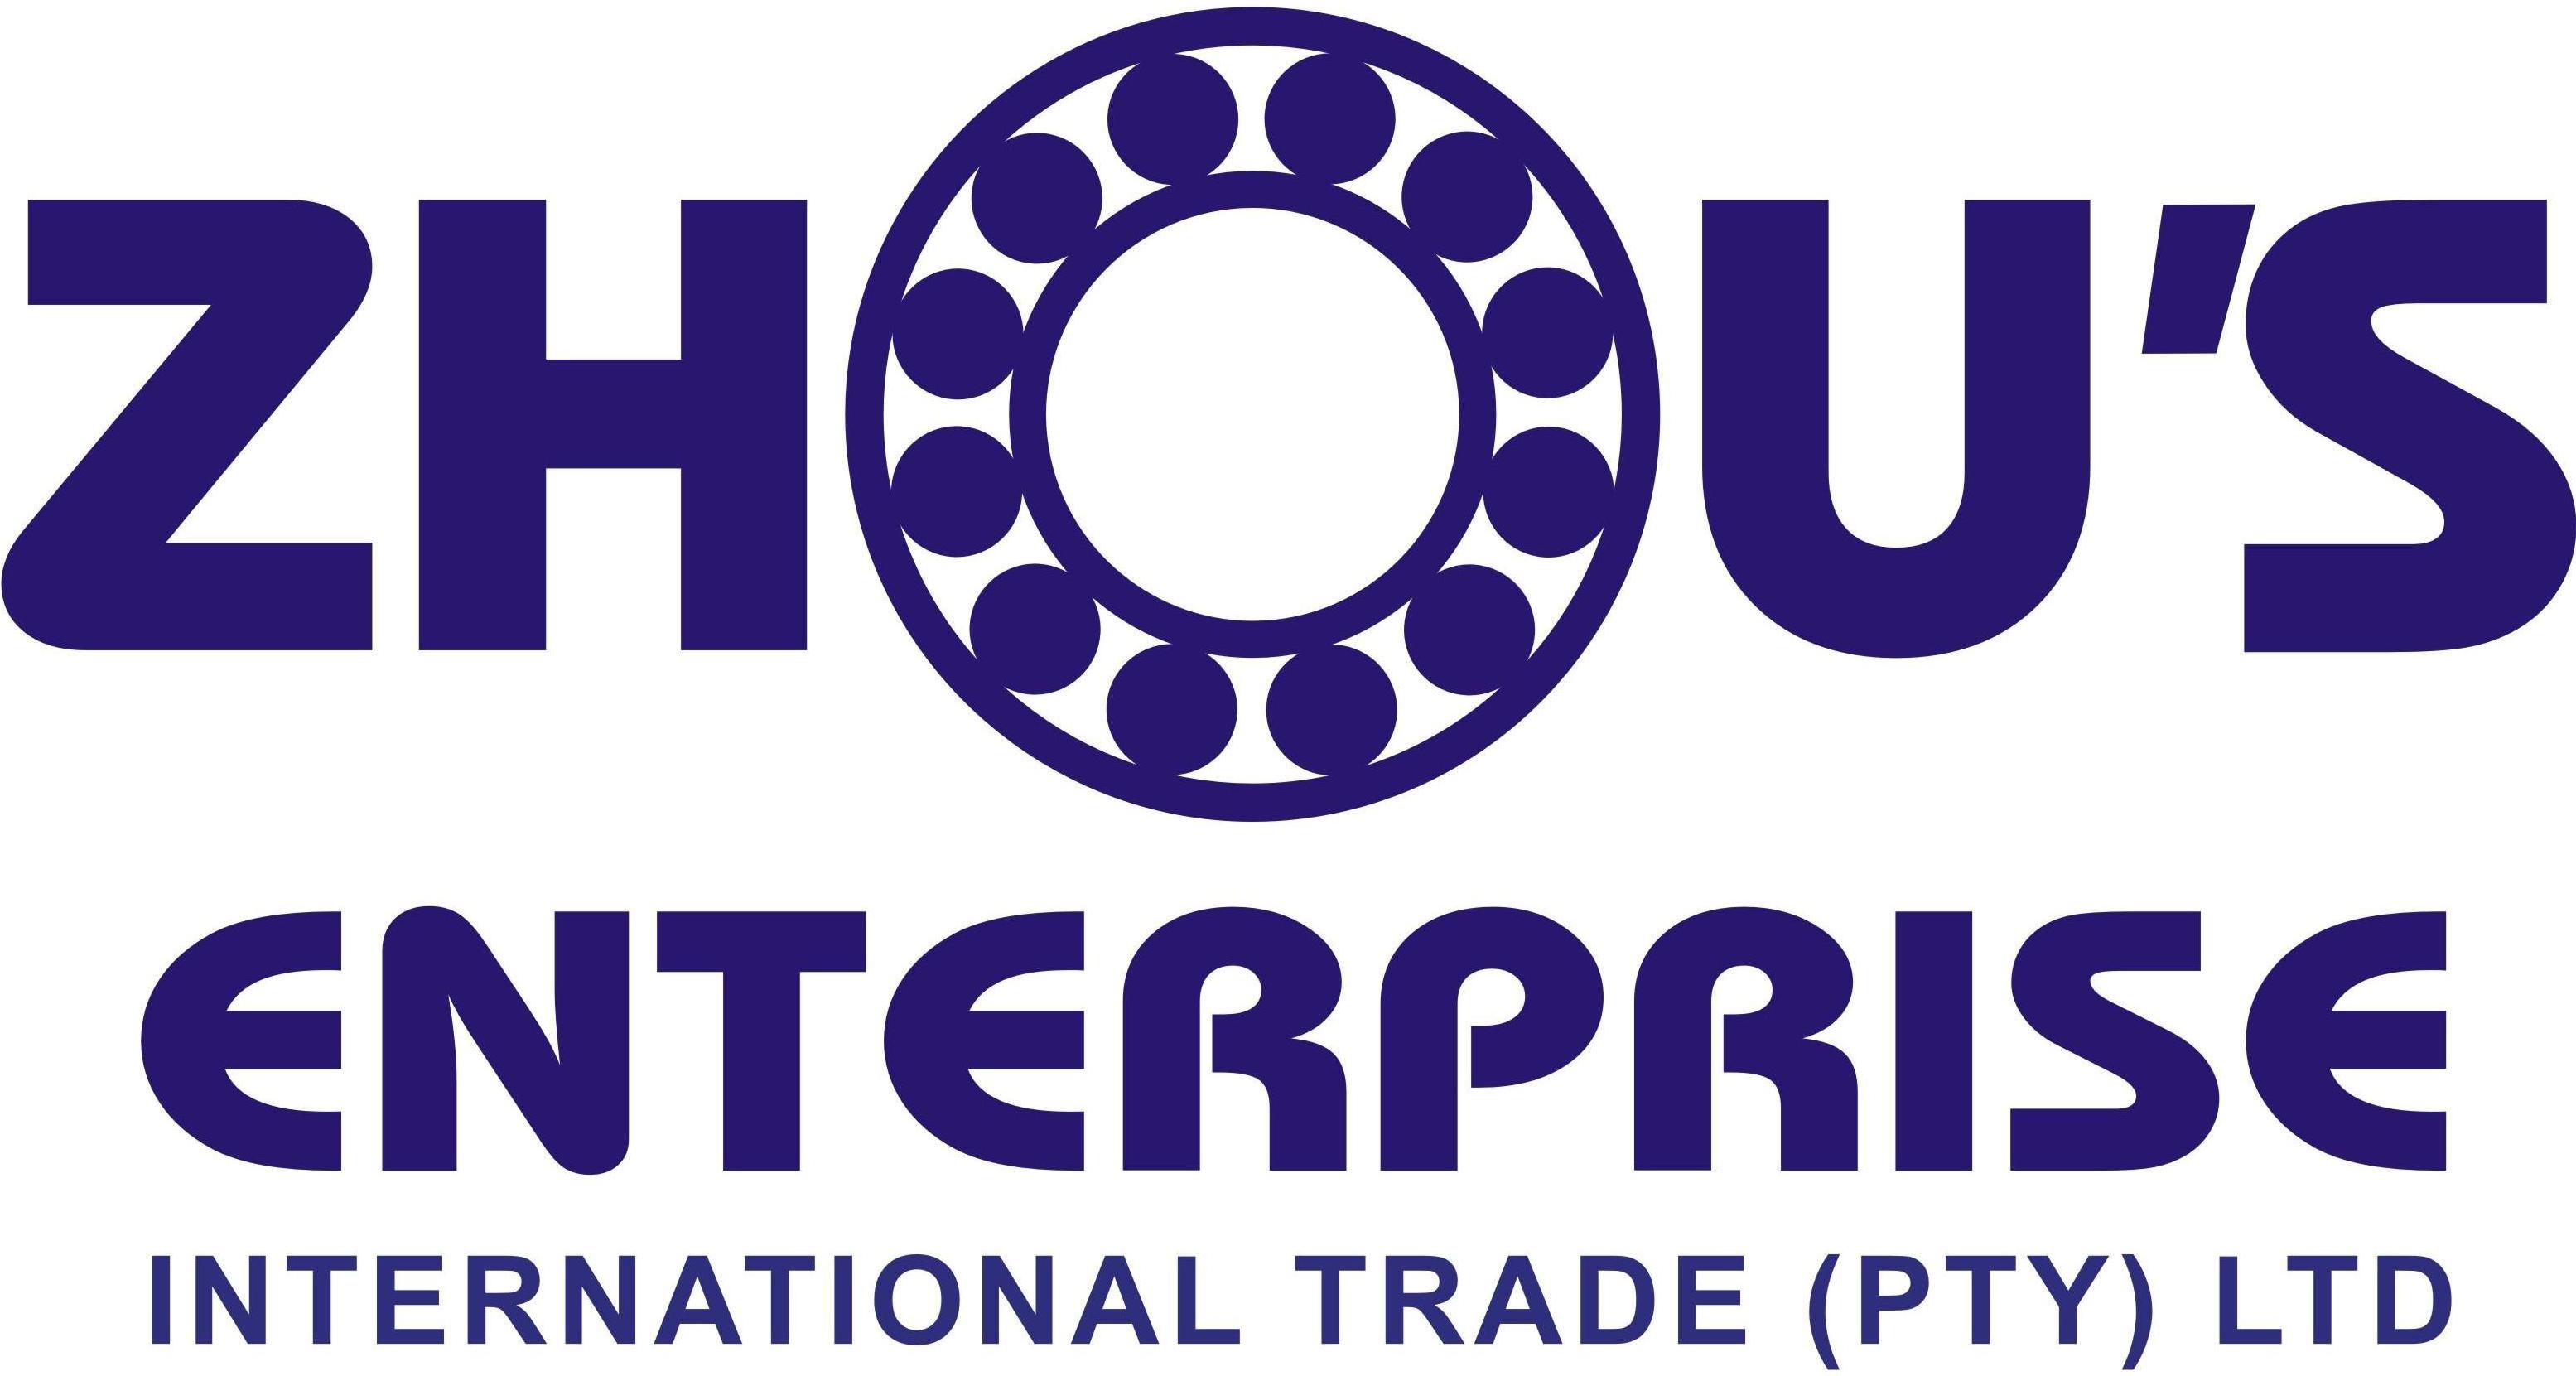 Zhous Enterprise Int Trade (Pty) Ltd logo